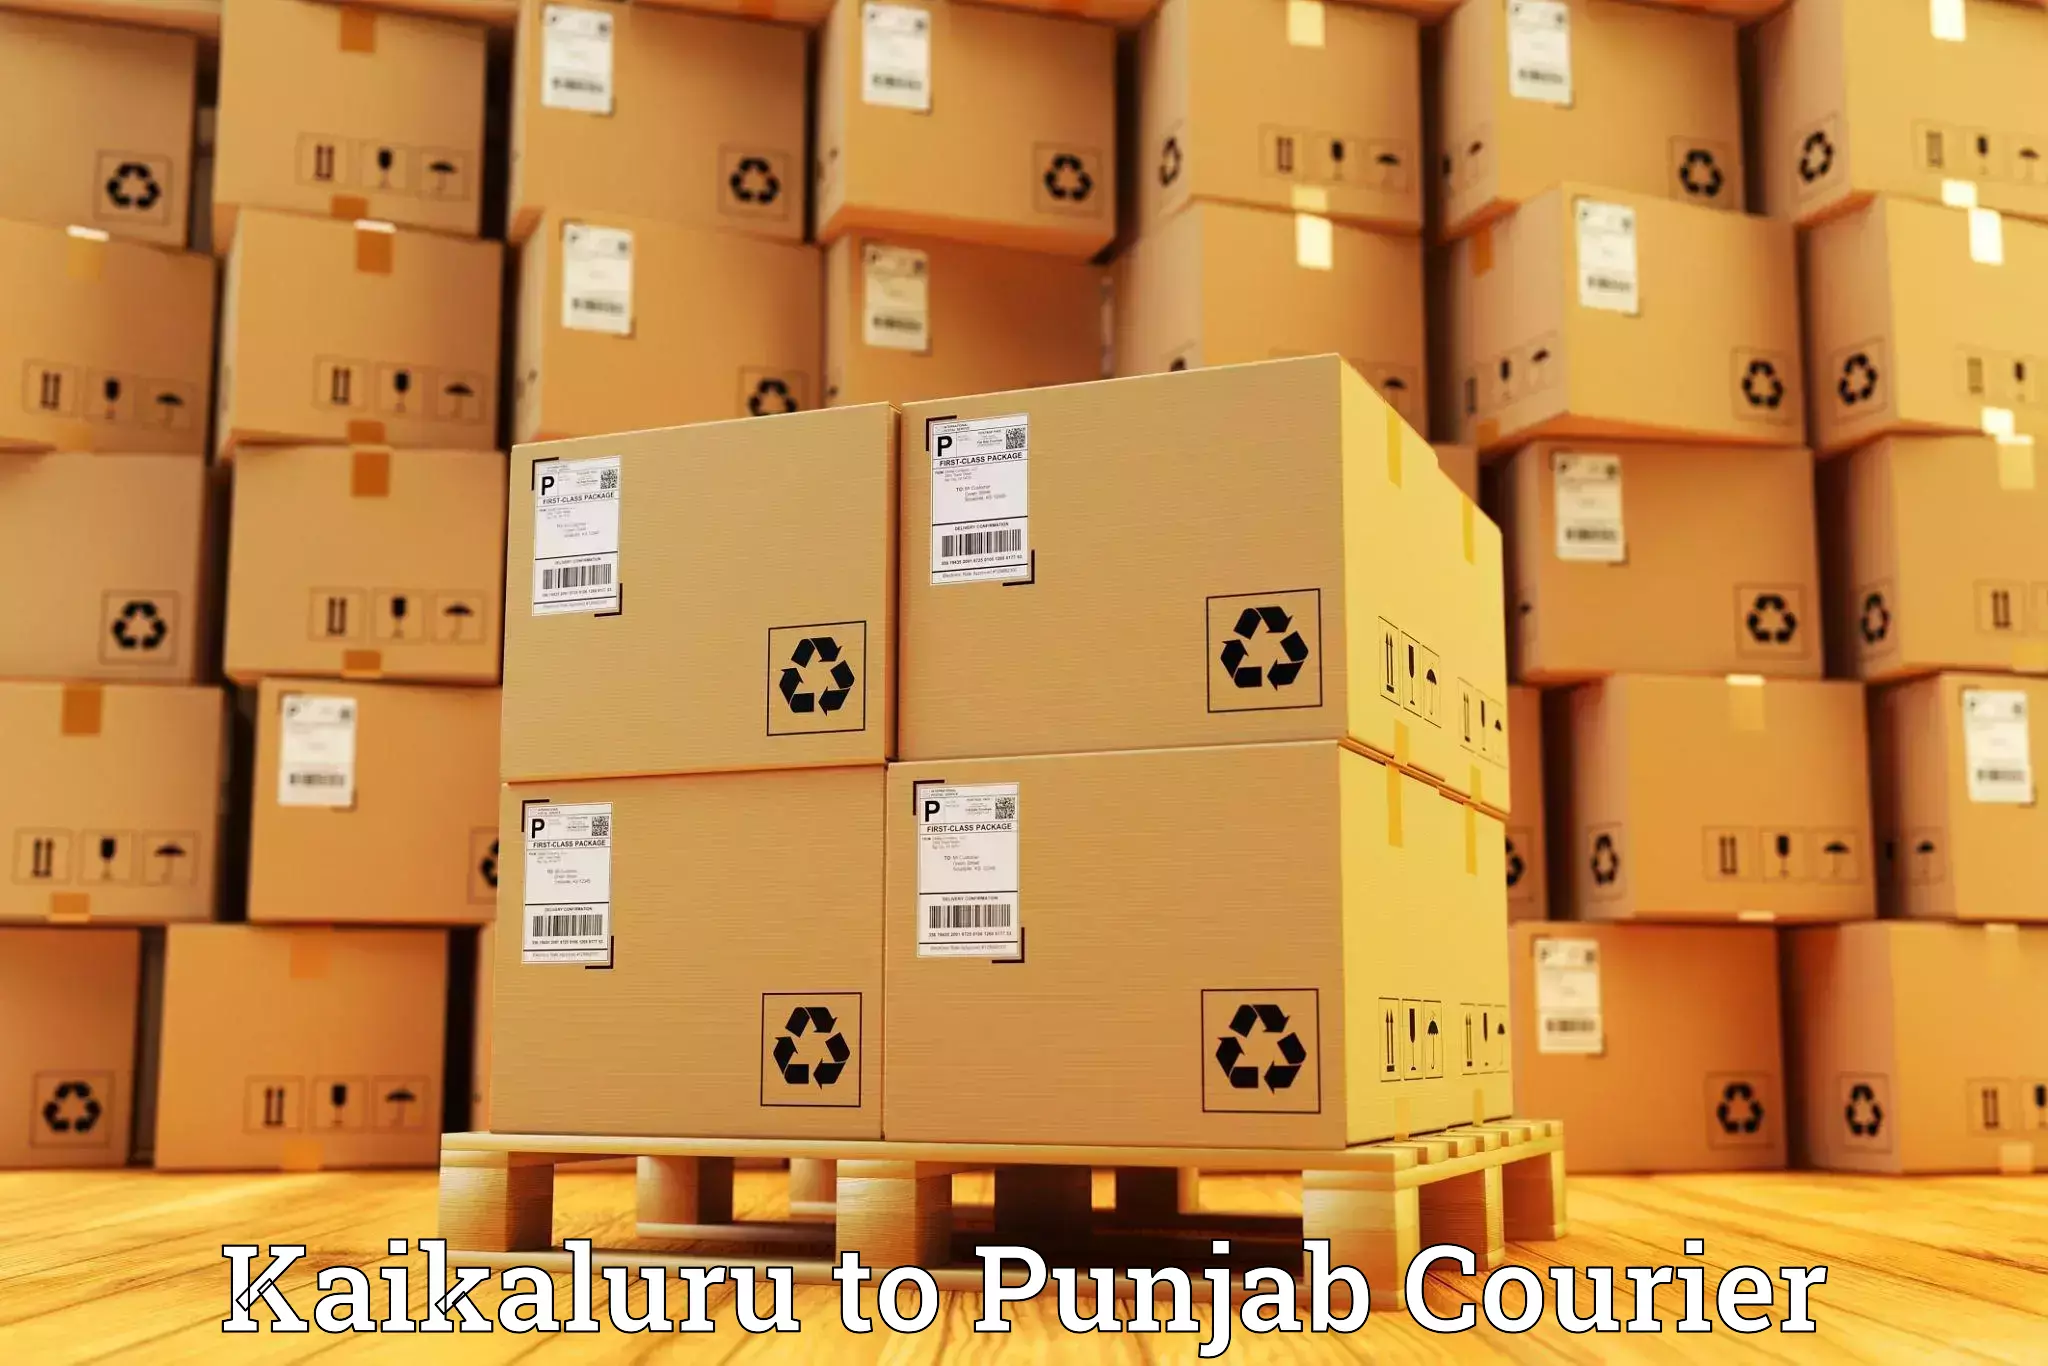 24/7 courier service Kaikaluru to Dhilwan